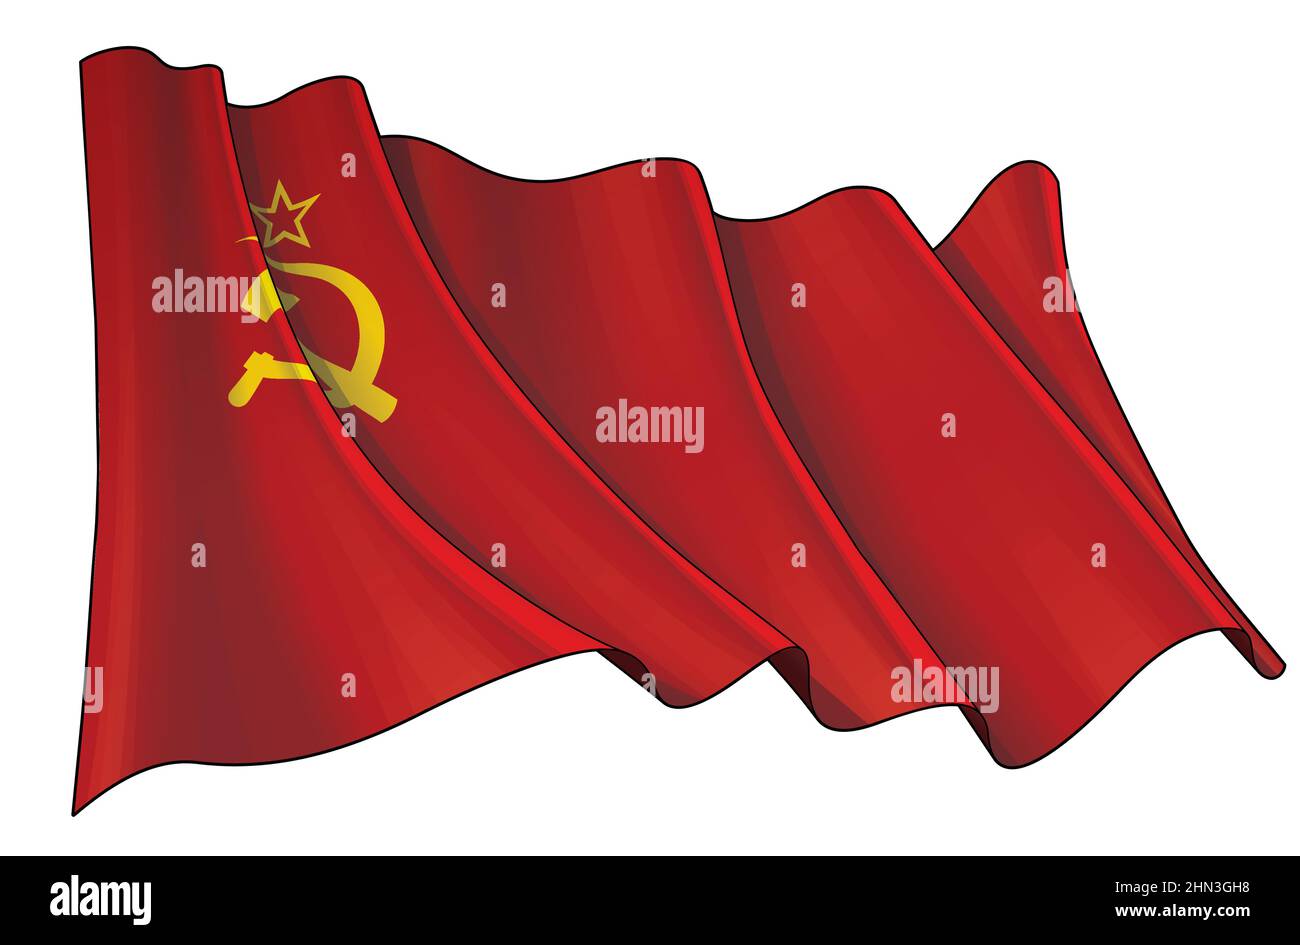 Illustrazione vettoriale di una bandiera ondeggiante dell'Unione Sovietica durante la seconda Guerra Mondiale. Tutti gli elementi in modo preciso su livelli e gruppi ben definiti. Seppia overtone su un separato Illustrazione Vettoriale